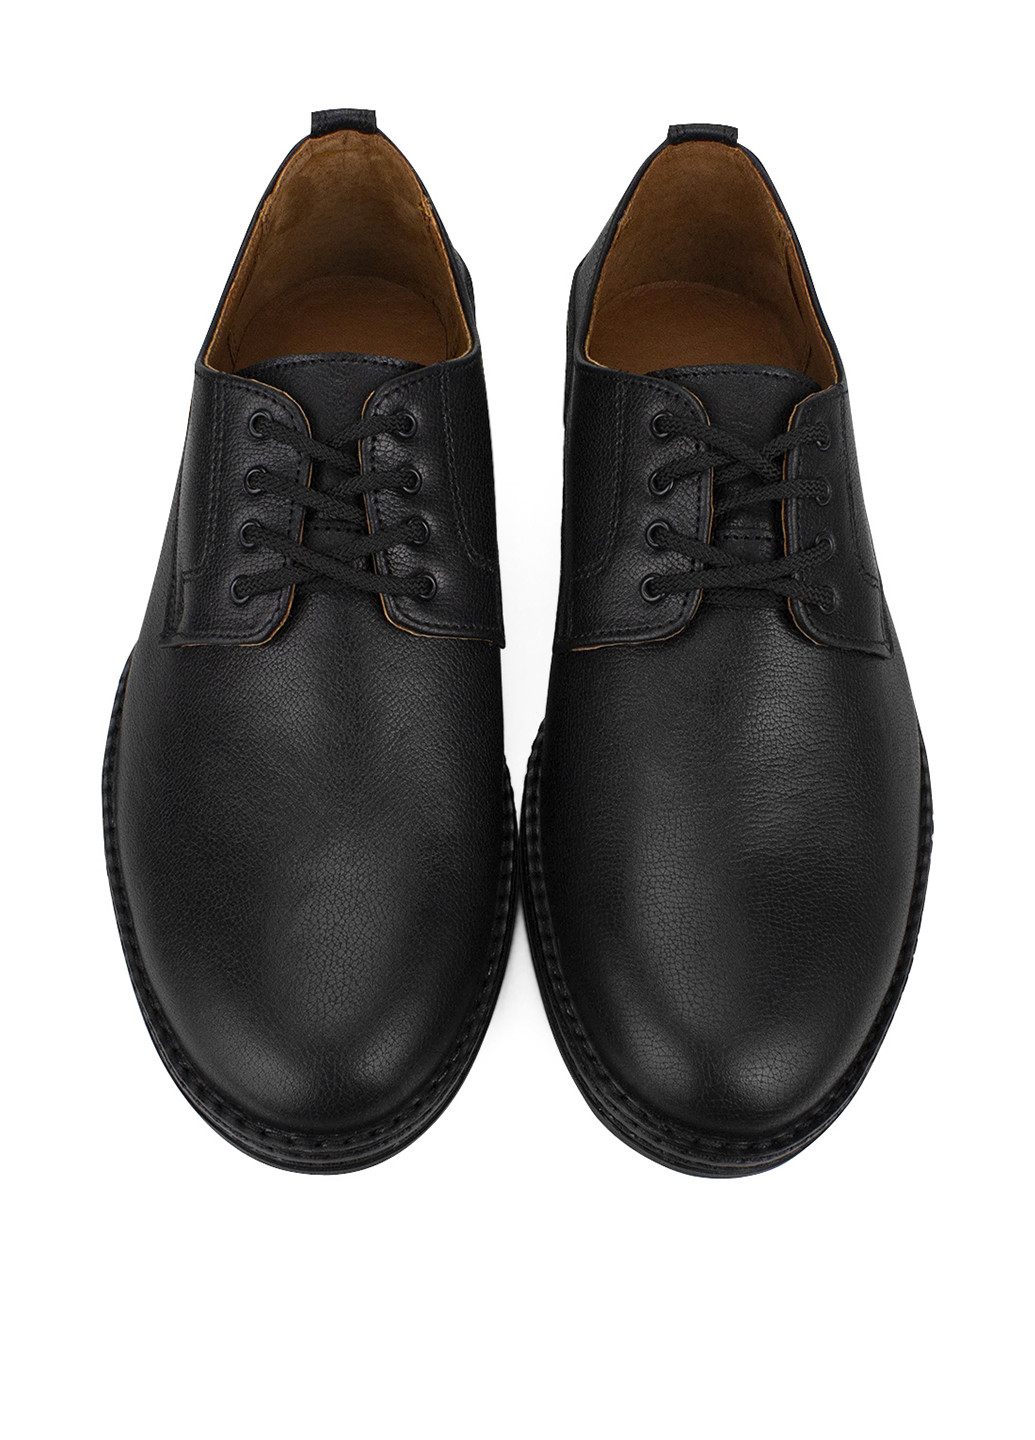 Черные классические туфли vm villomi на шнурках